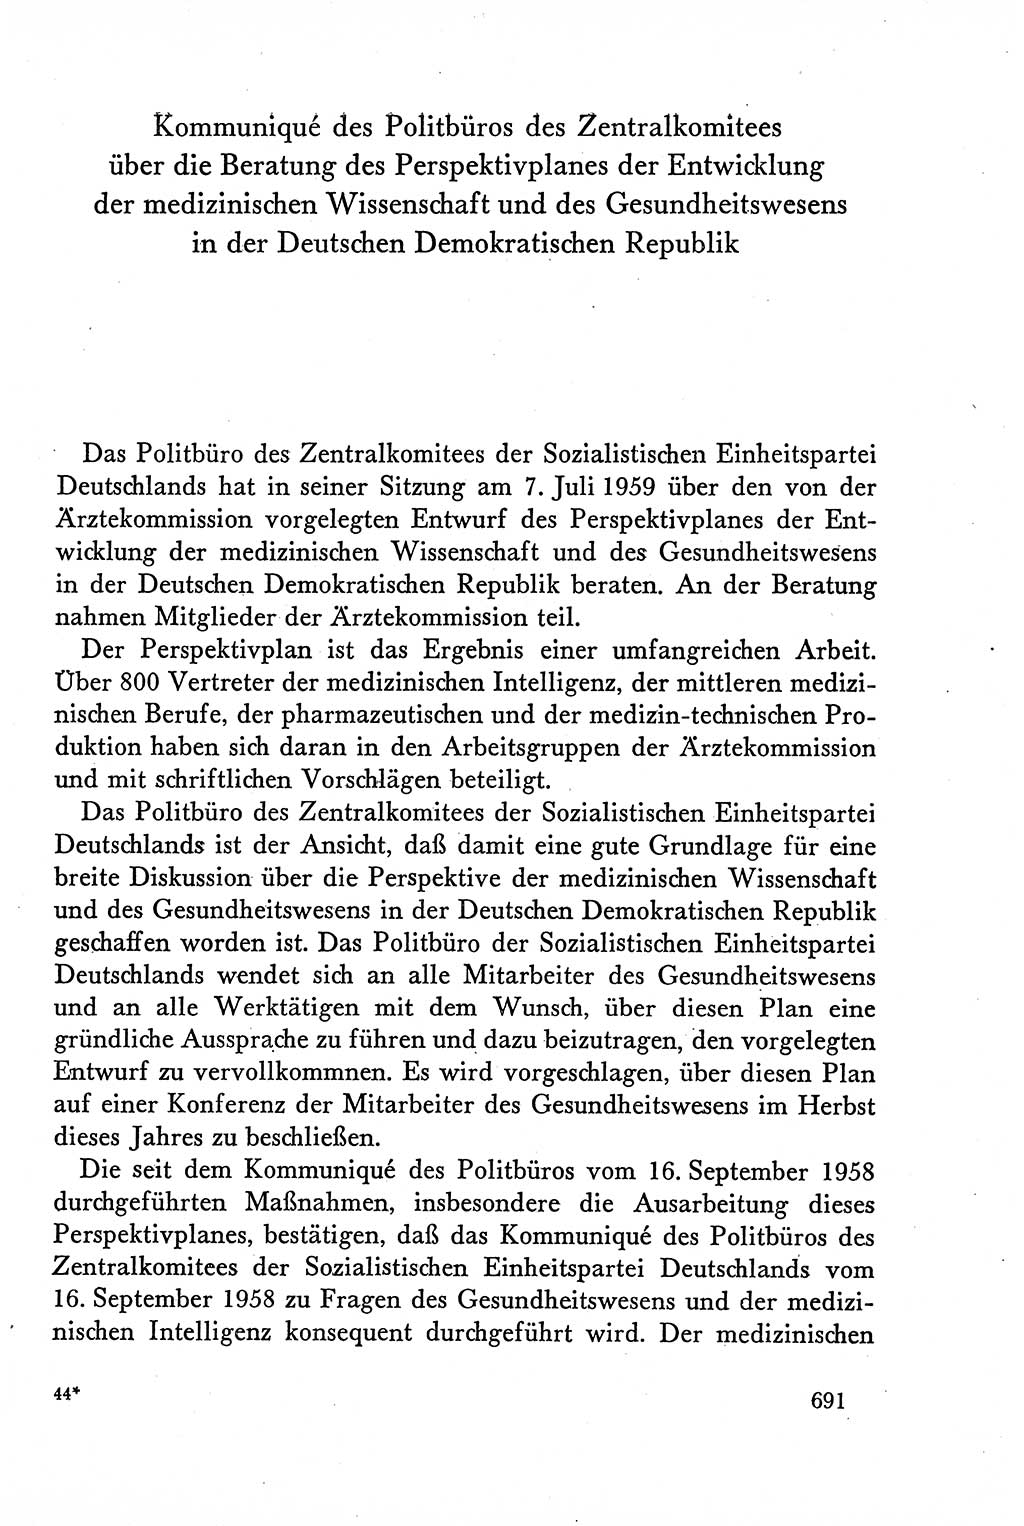 Dokumente der Sozialistischen Einheitspartei Deutschlands (SED) [Deutsche Demokratische Republik (DDR)] 1958-1959, Seite 691 (Dok. SED DDR 1958-1959, S. 691)